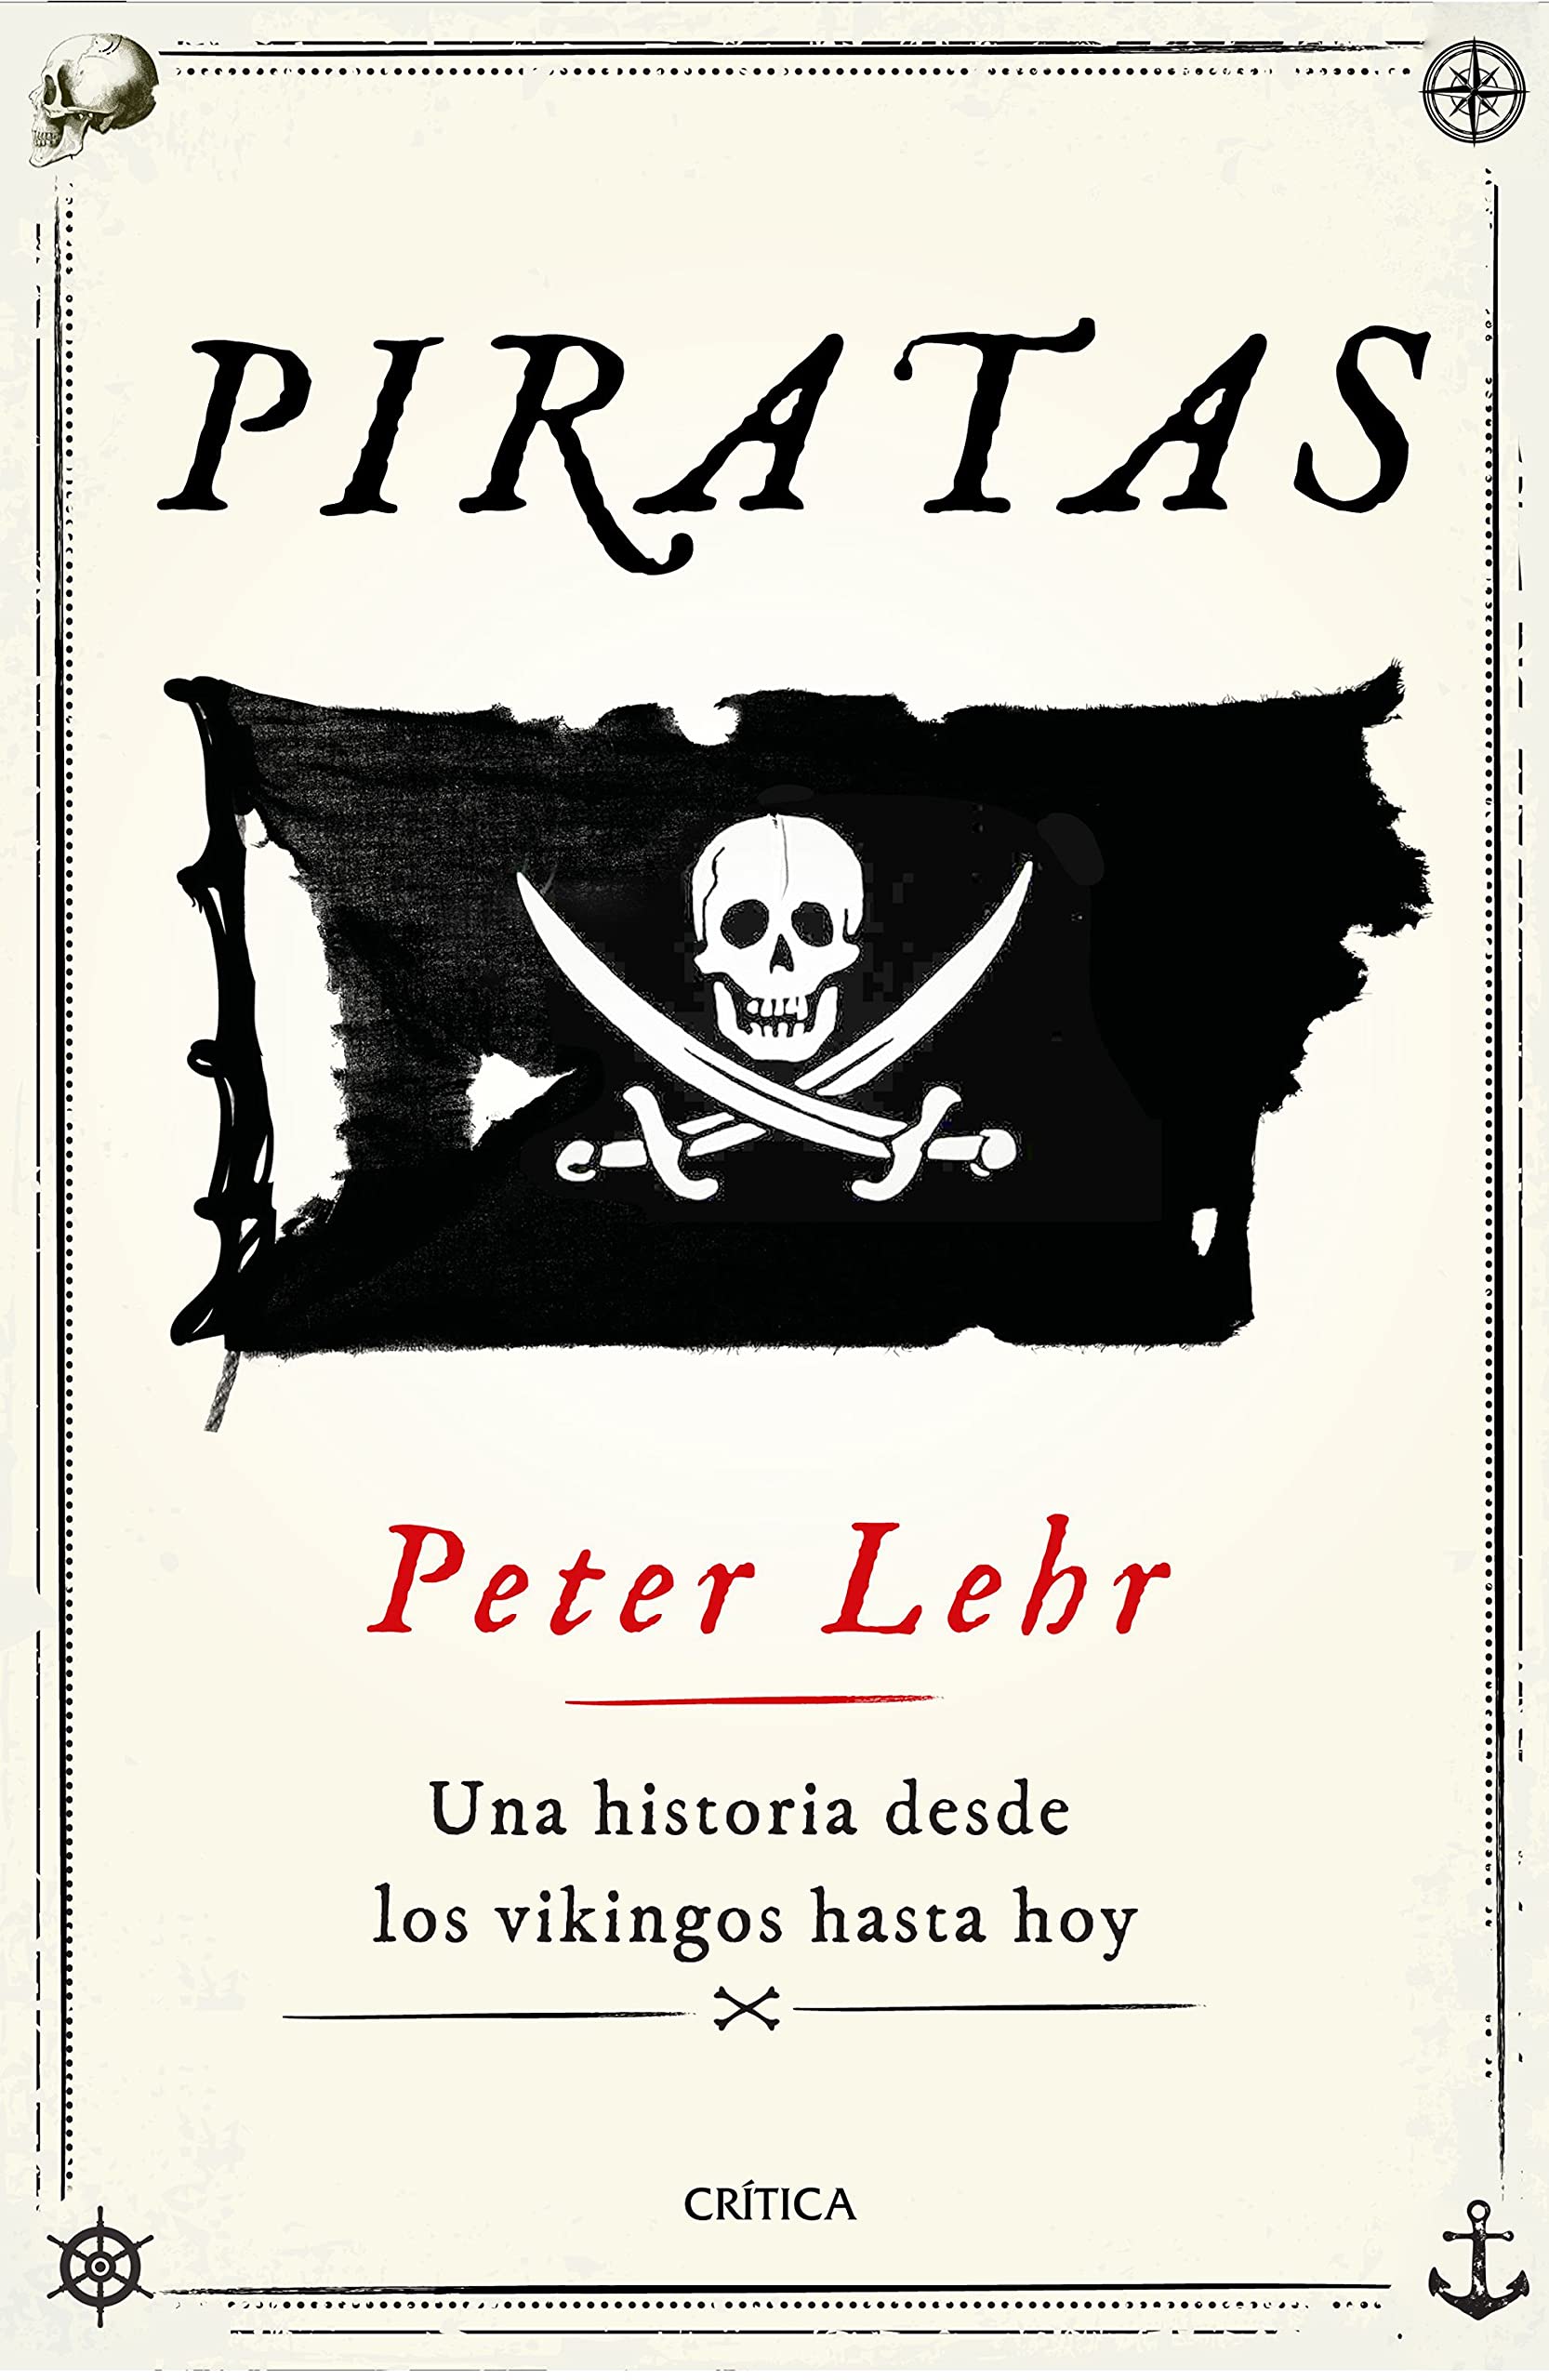 El ‘honrado’ trabajo de pirata